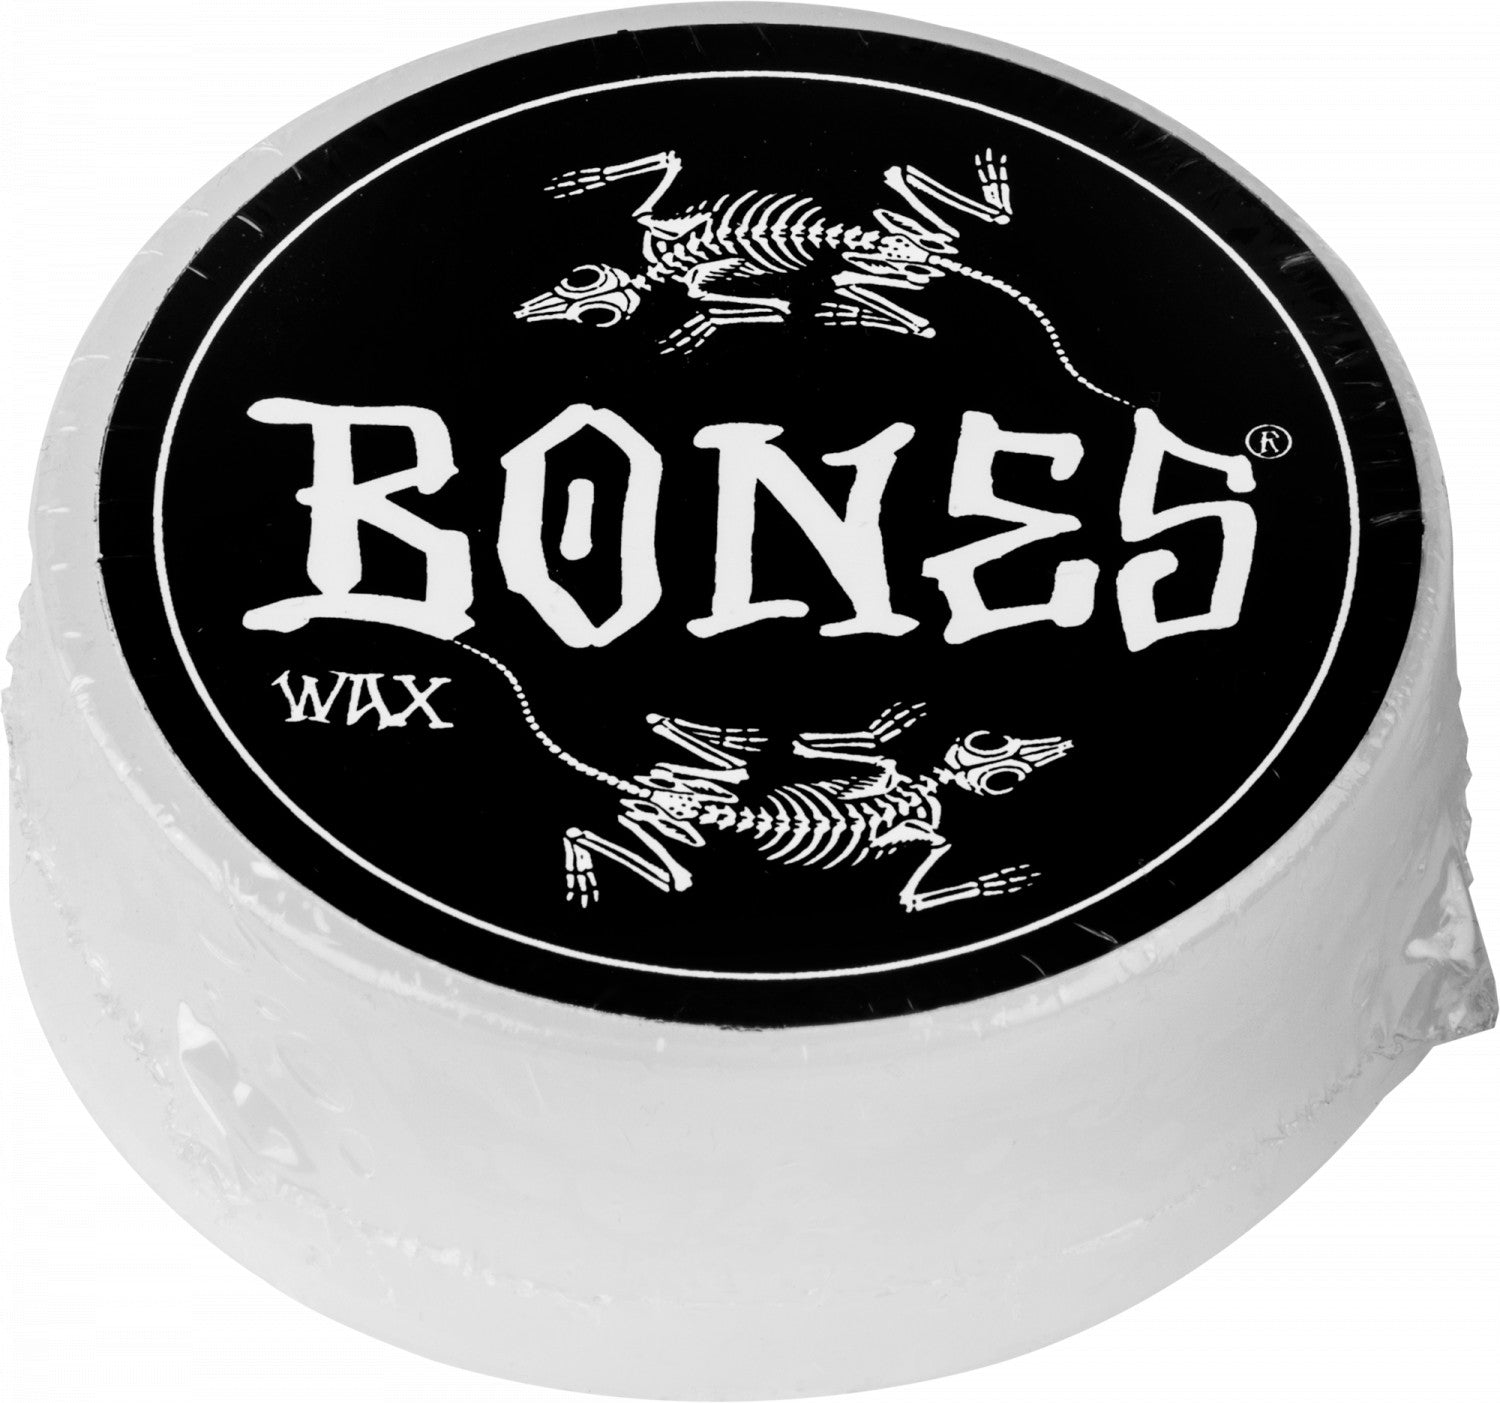 Vato Cup Rat Bones Wheels Skateboard Wax